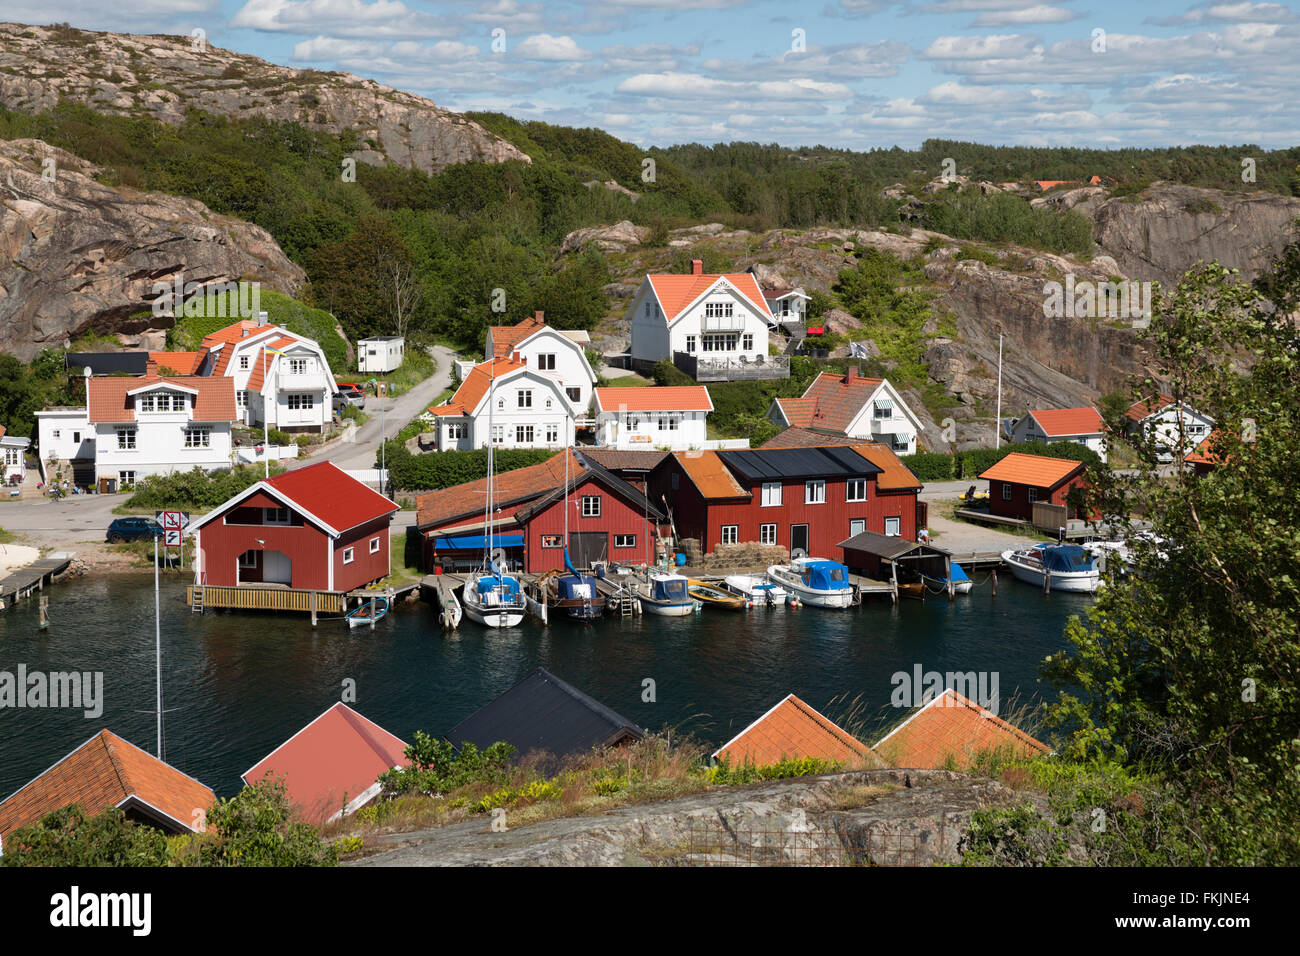 Traditionelle Falu rot Fischer Häuser und Ferienhäuser entlang der Küste, Hamburgsund, Bohuslän-Küste, Süd-West Schweden, Schweden Stockfoto